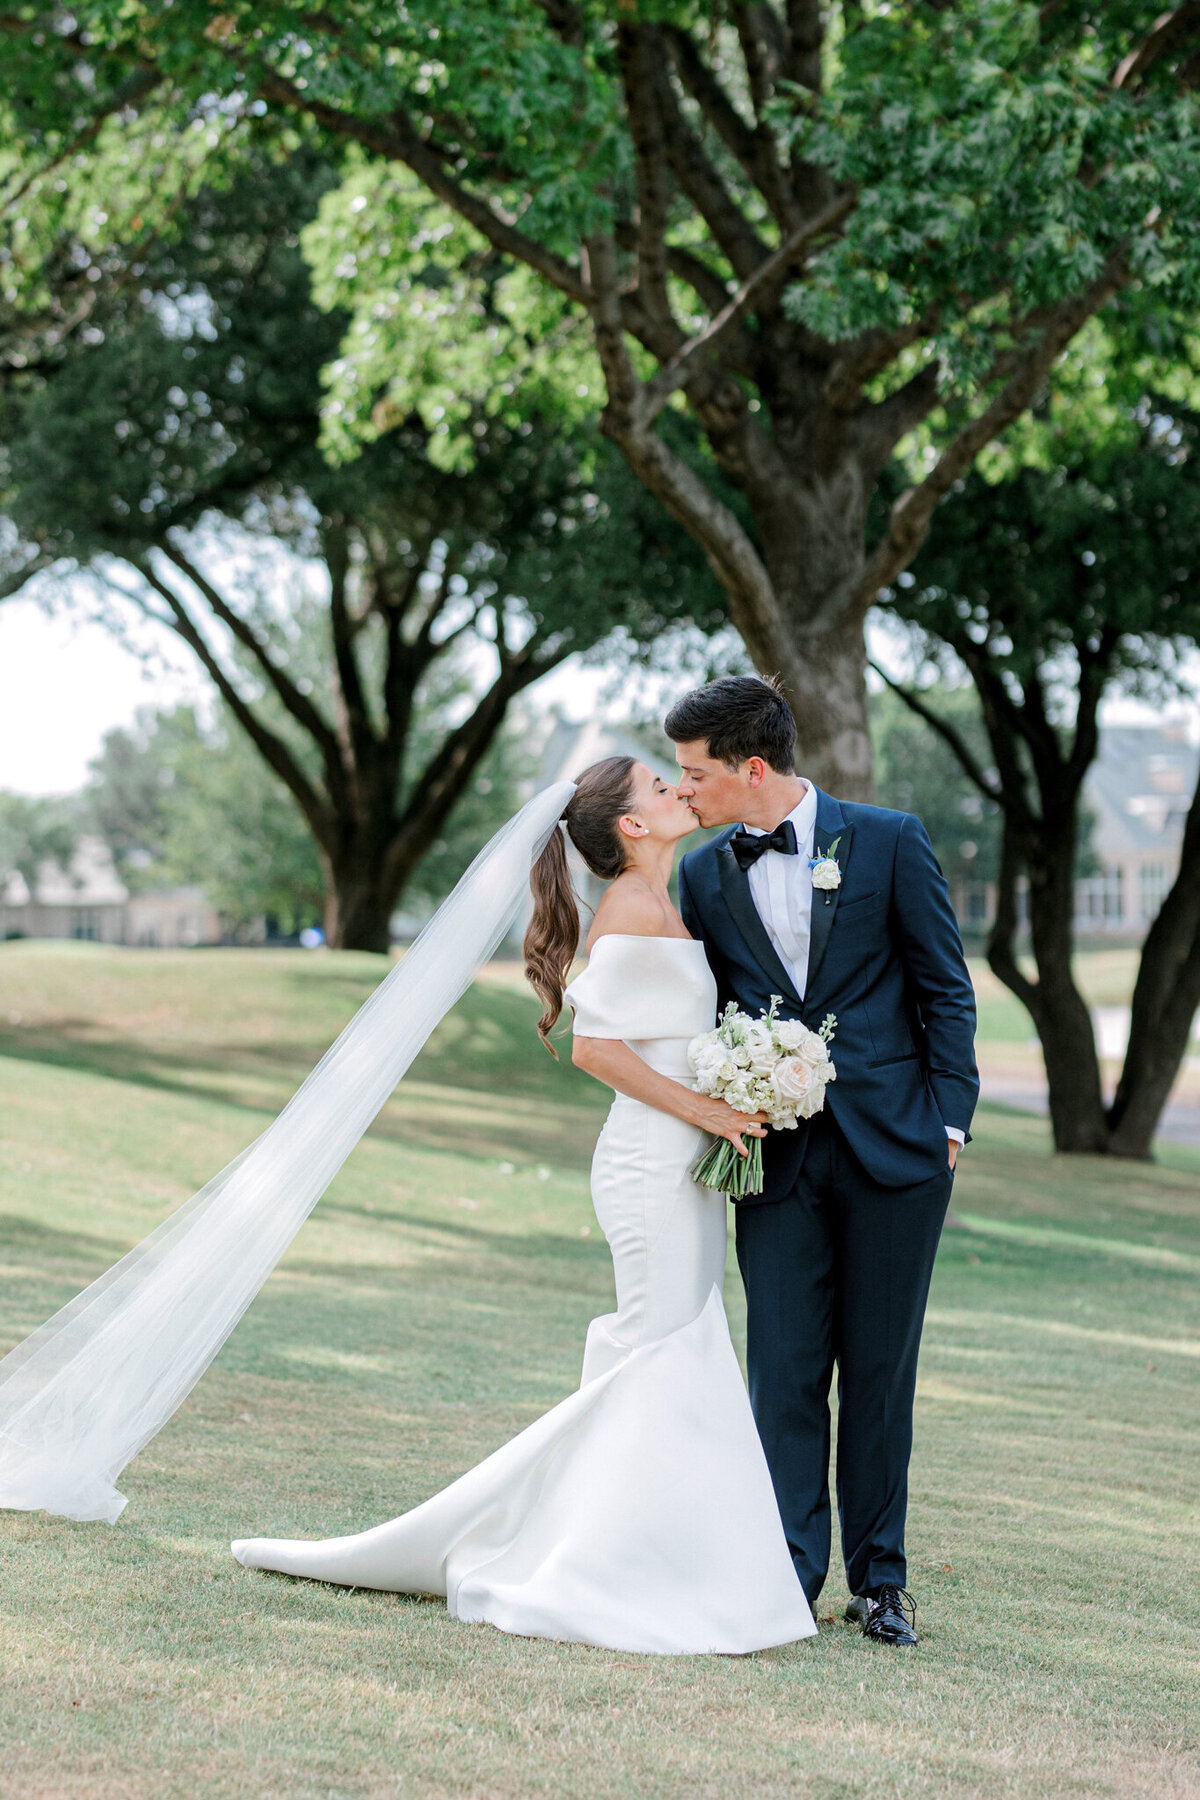 Annie & Logan's Wedding | Dallas Wedding Photographer | Sami Kathryn Photography-4